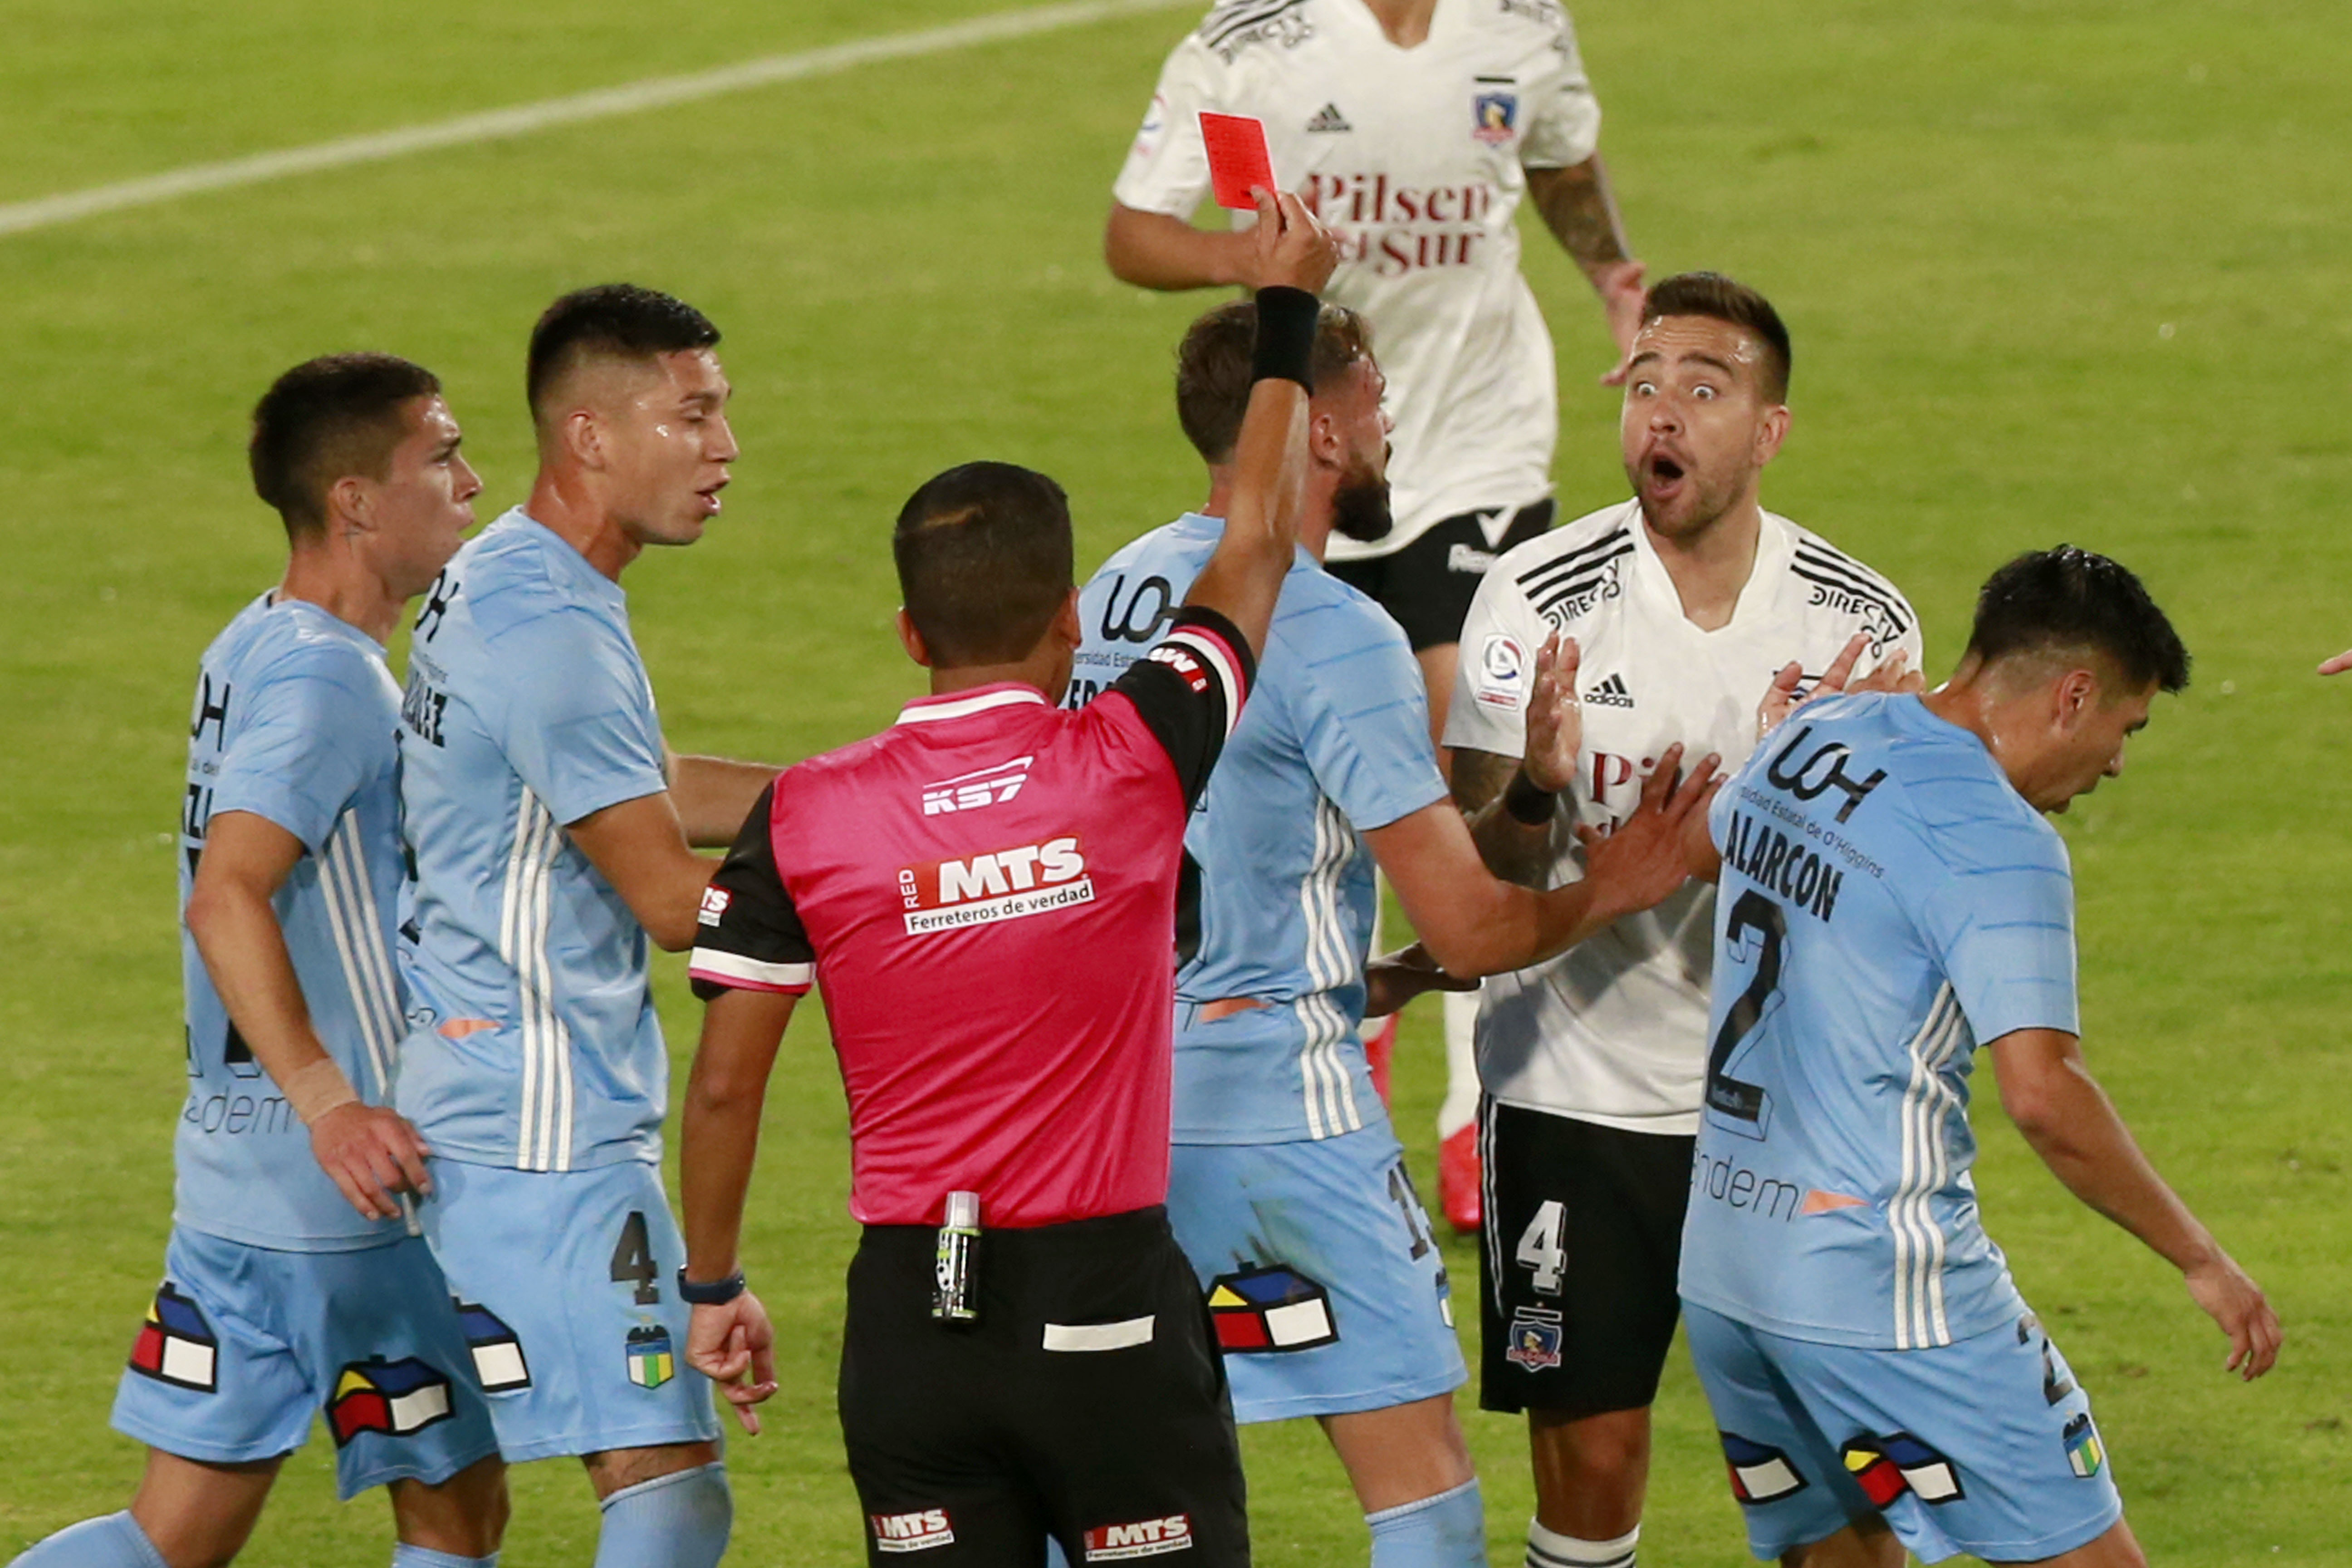 Matías Zaldivia recibió tarjeta roja y dejó a Colo Colo sin titulares en defensa. | Foto: Agencia Uno